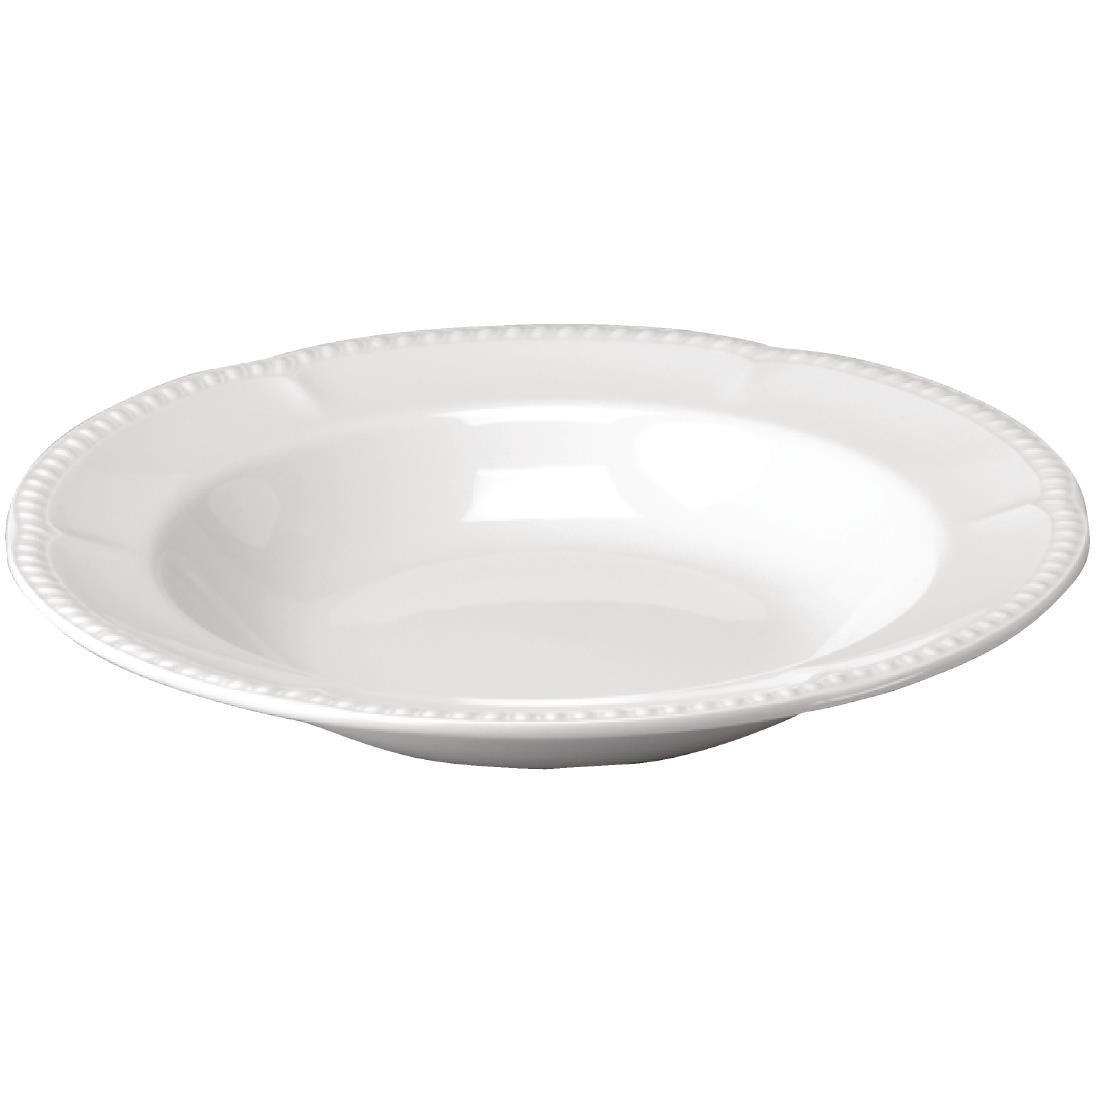 W101 - Buckingham White Pasta Plate